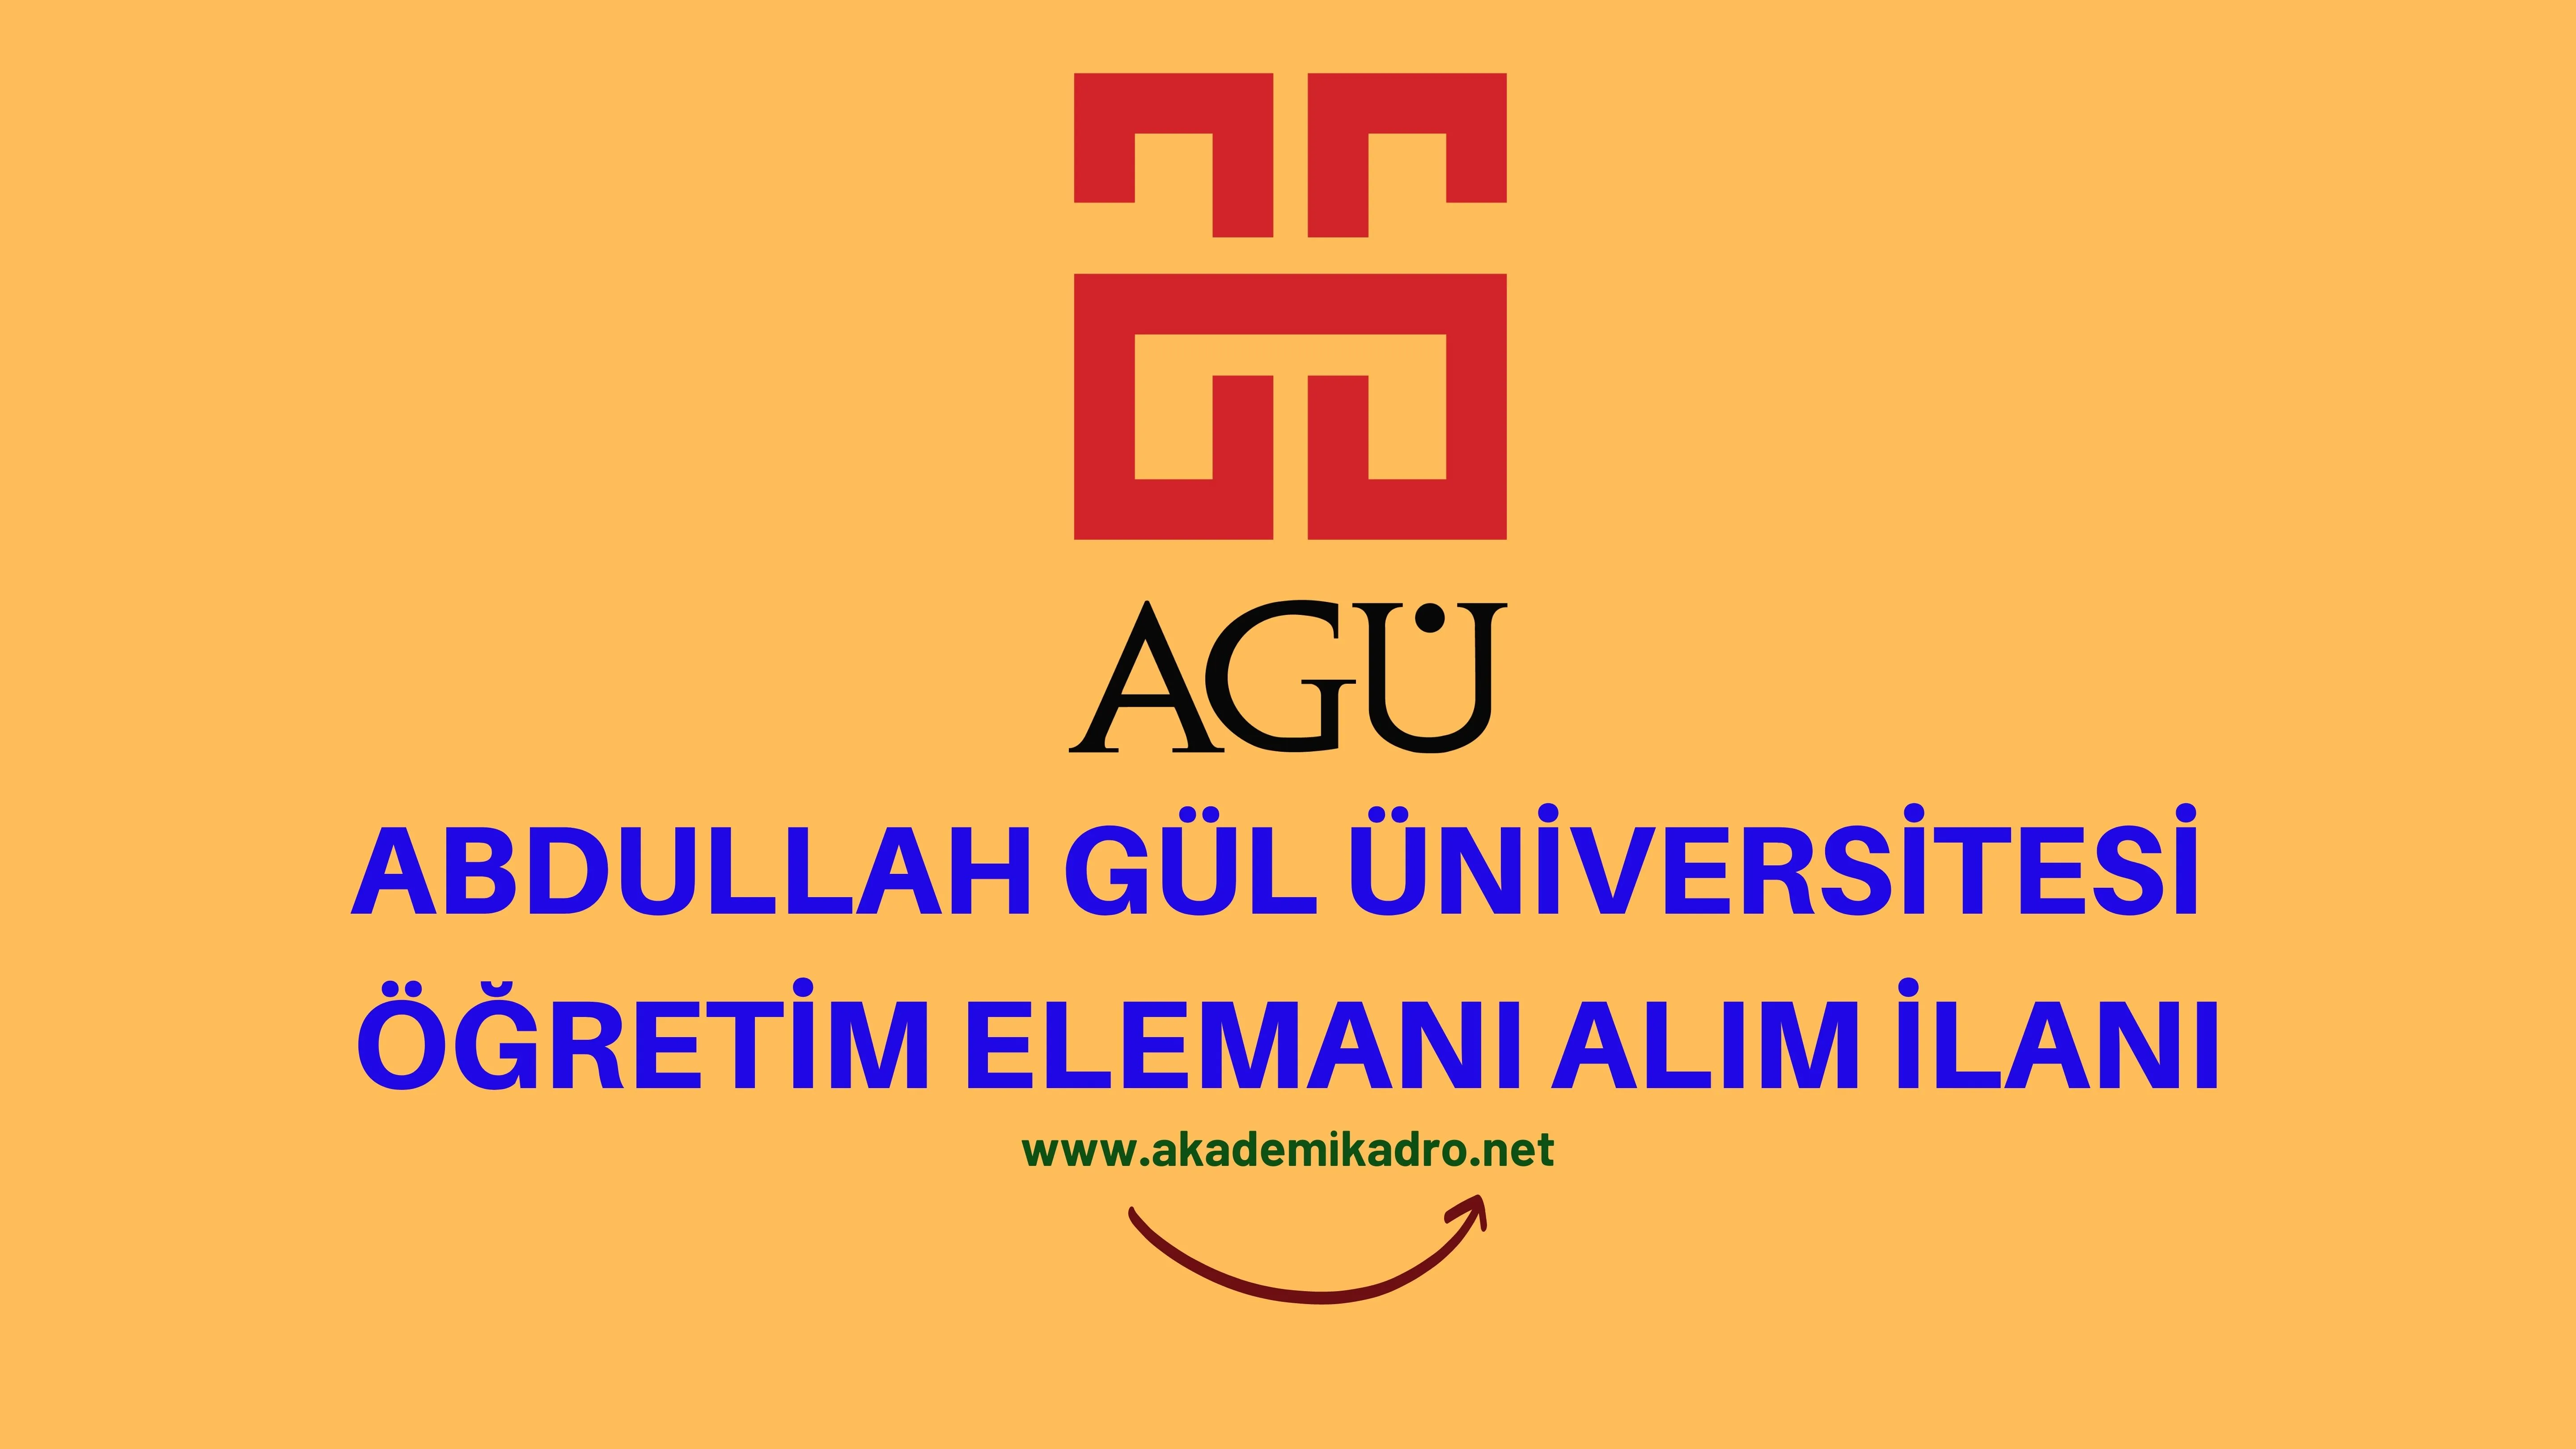 Abdullah Gül Üniversitesi 5 Araştırma görevlisi ve 4 Öğretim görevlisi alacaktır. Son başvuru tarihi 19 Ekim 2022